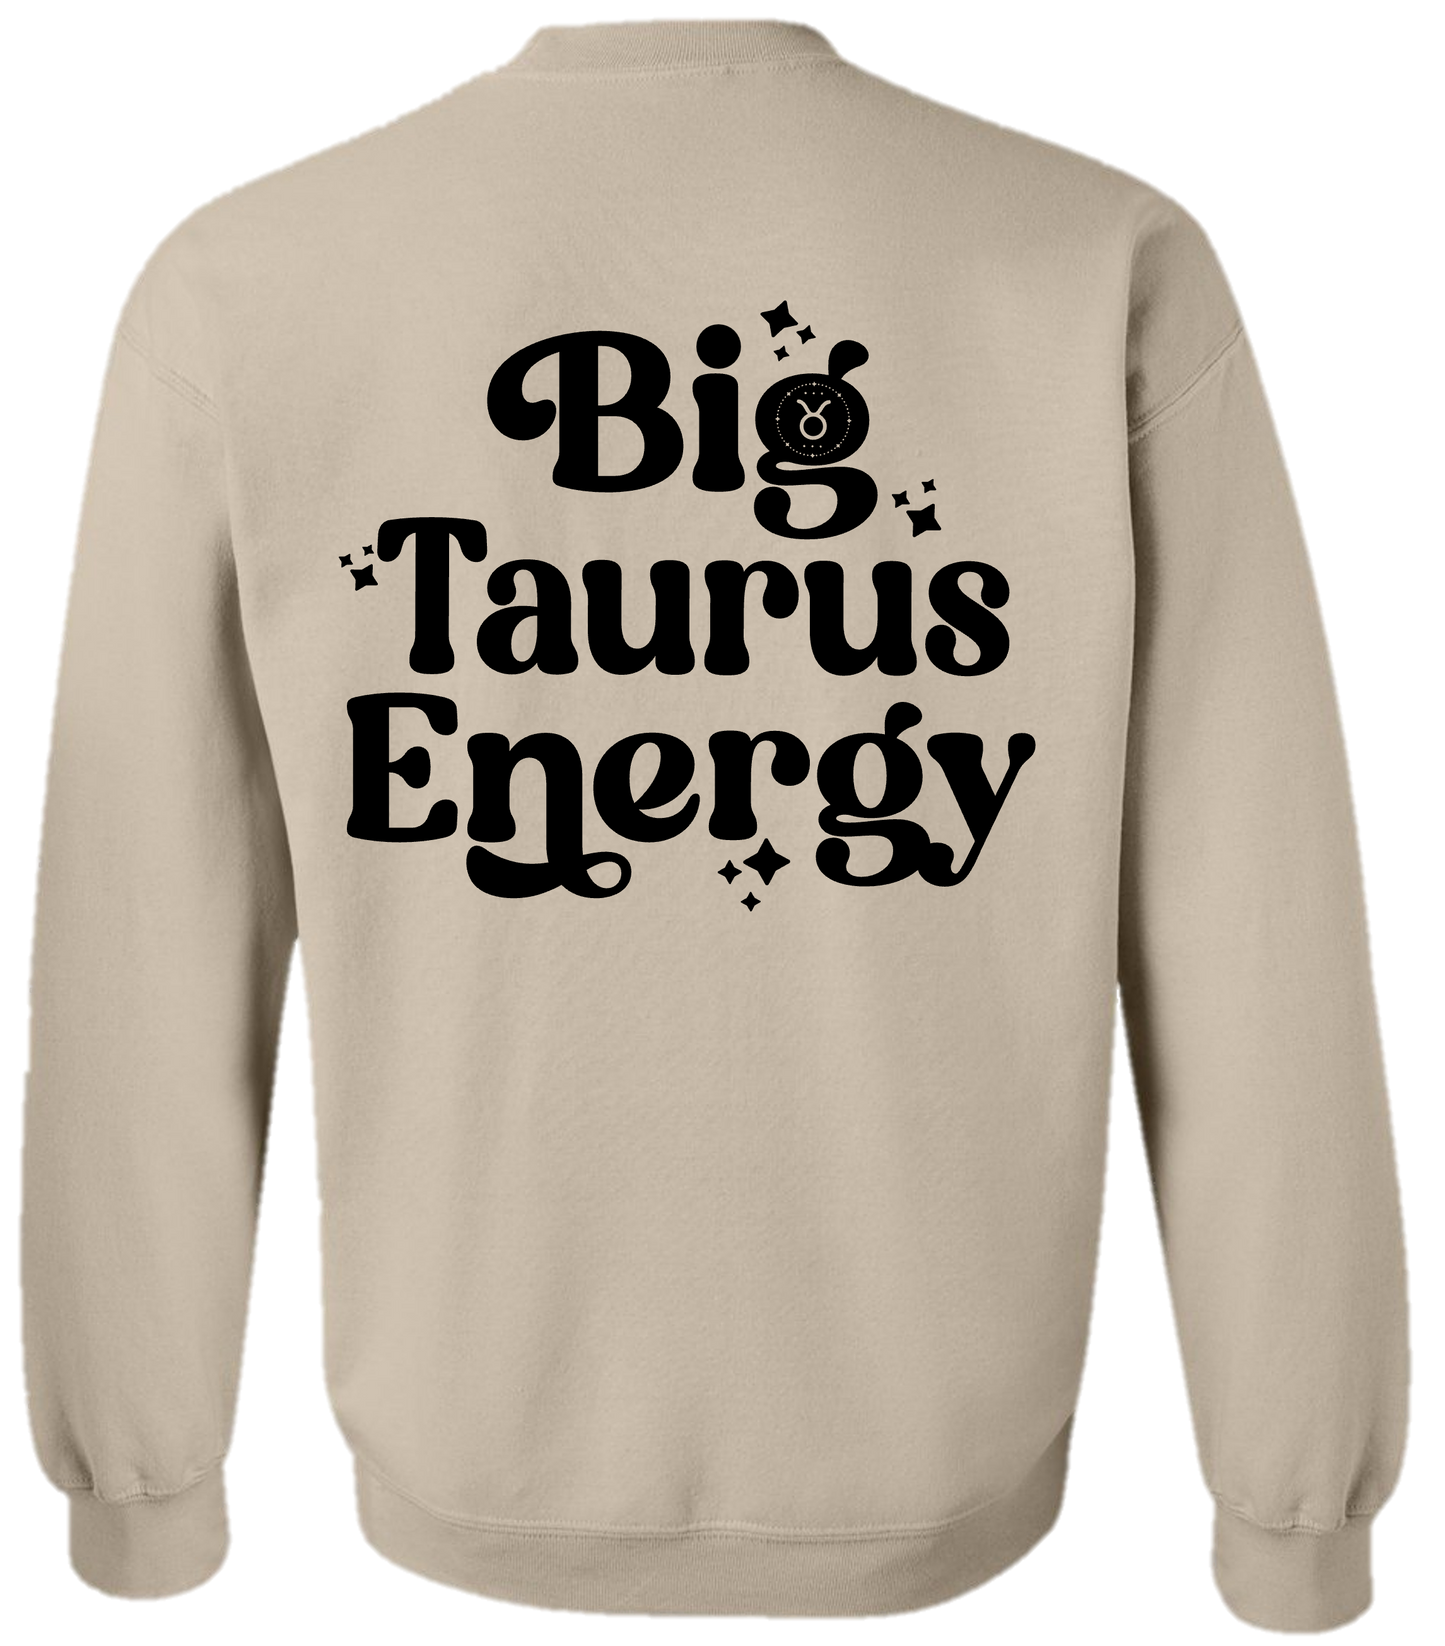 Big Taurus Energy Sweatshirt